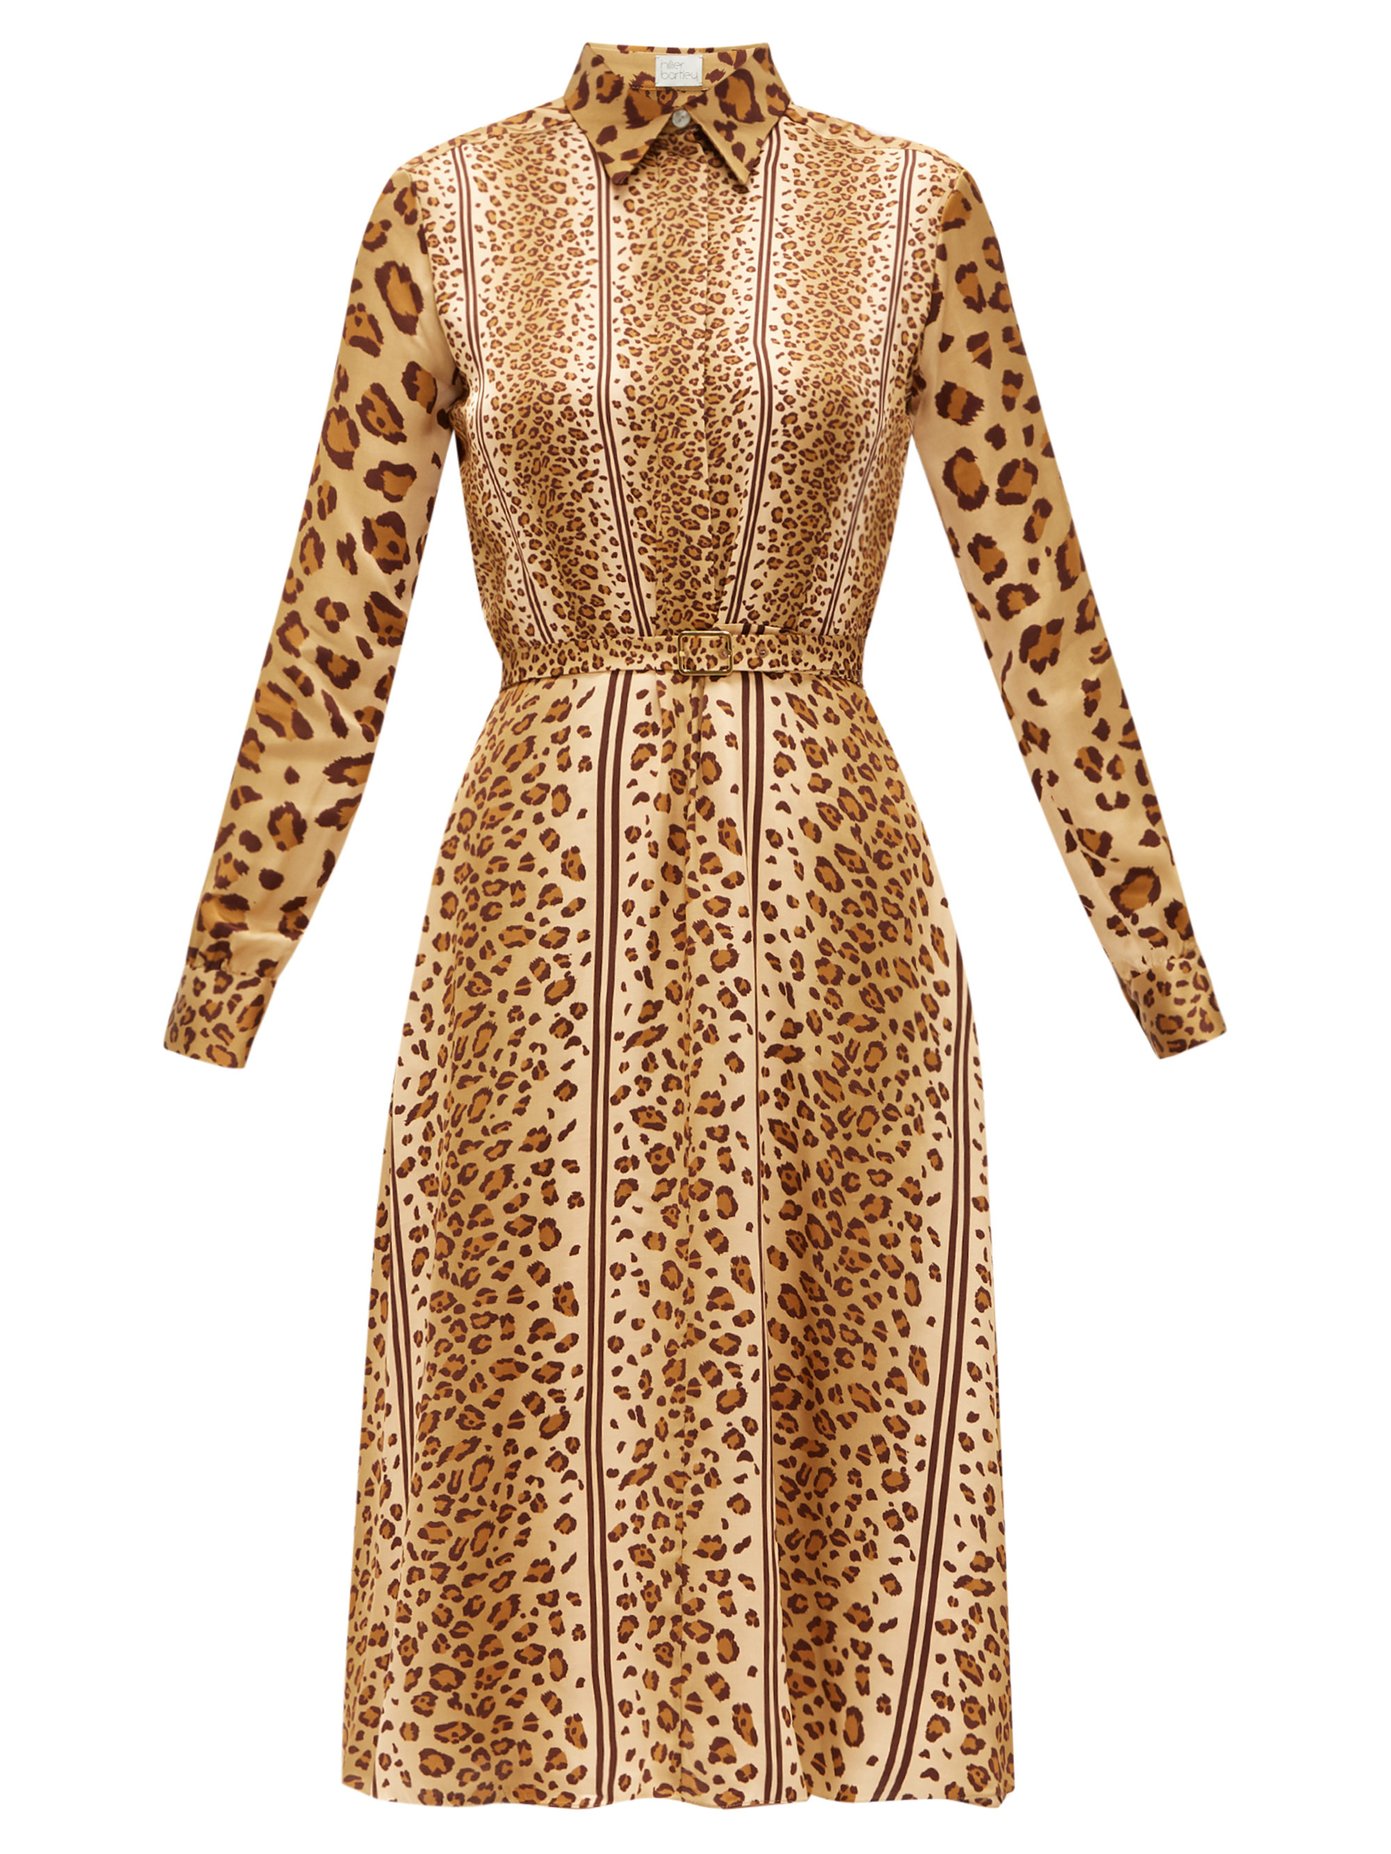 leopard print shirt dress next